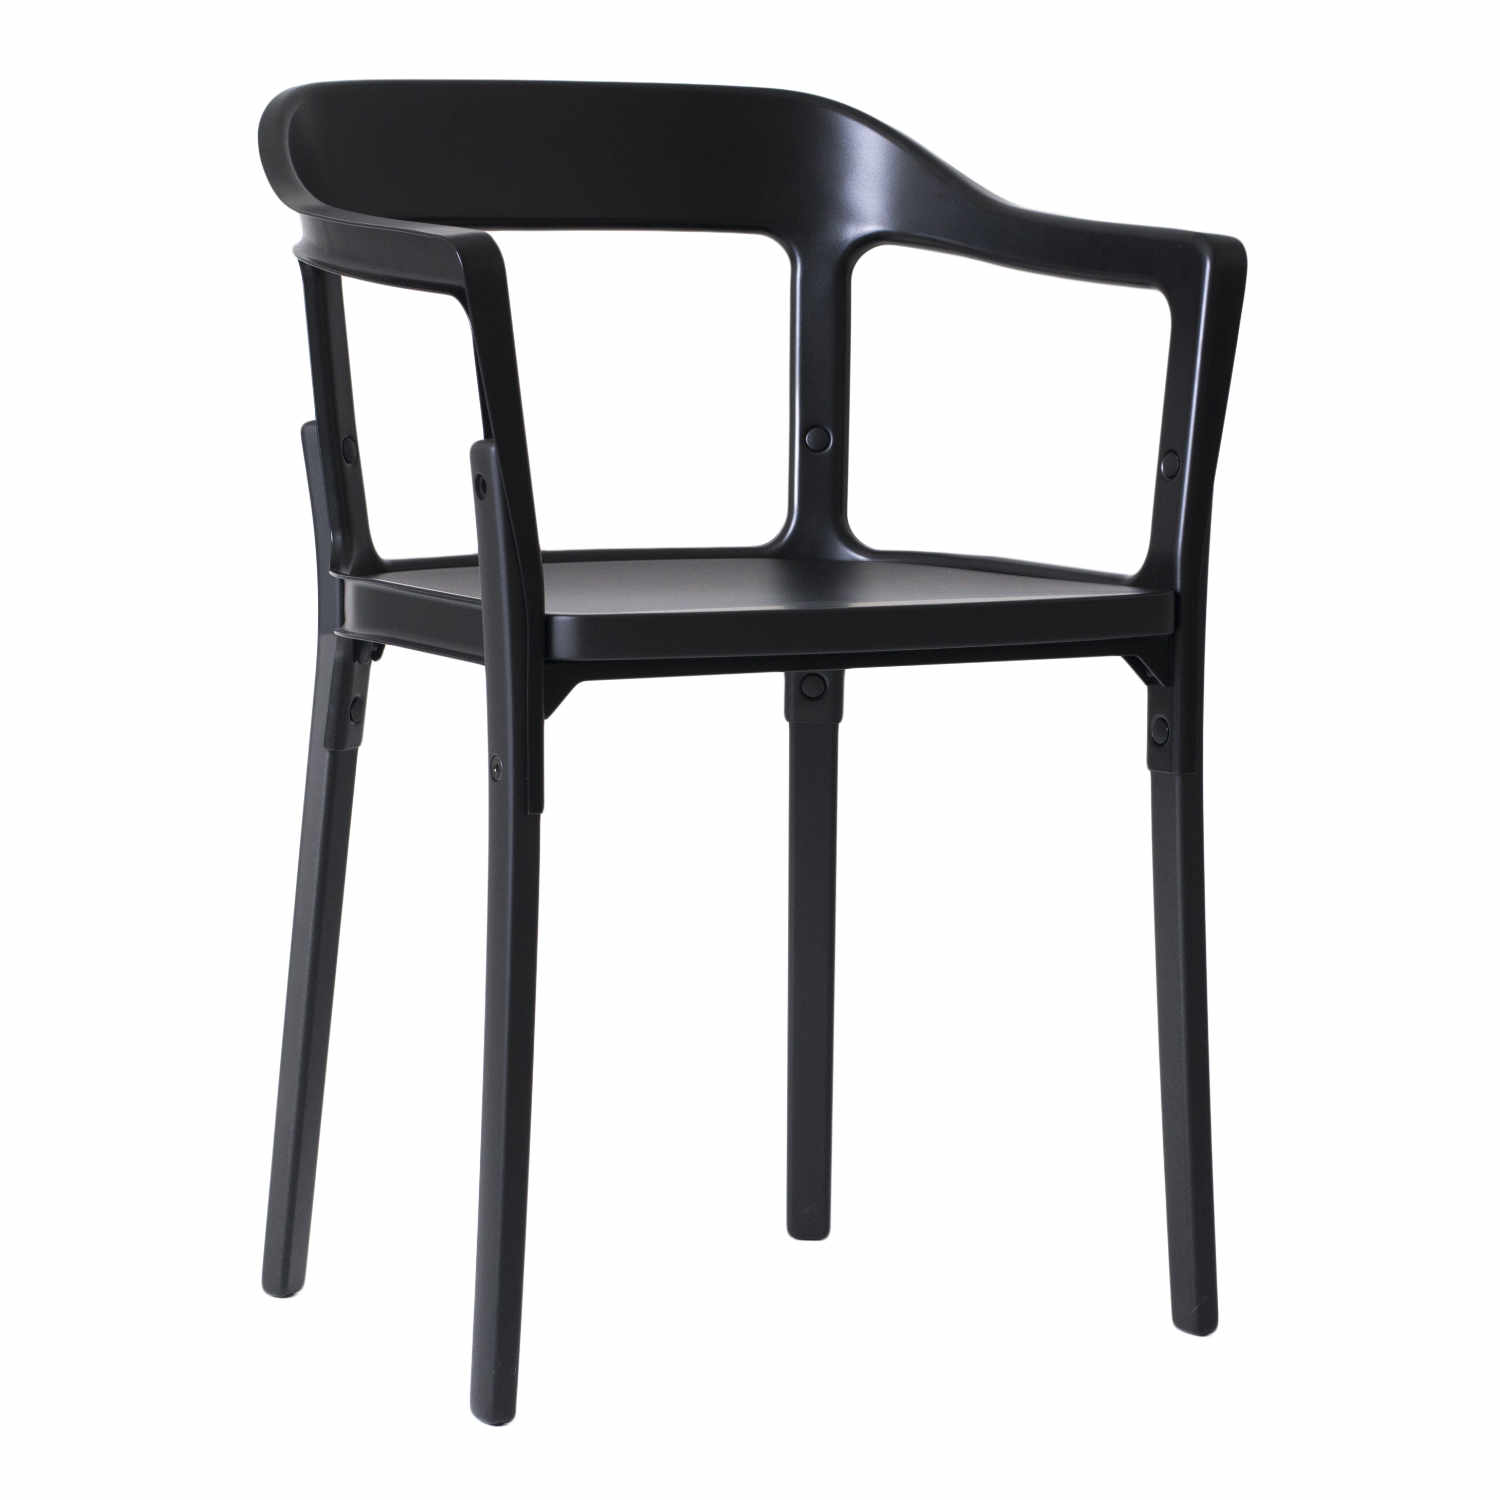 Steelwood Chair Armlehnstuhl, Ausführung Beine u. Sitz buche grau lackiert - 7119, Ausführung Rückenlehne grau-anthrazit 5142 von Magis Spa